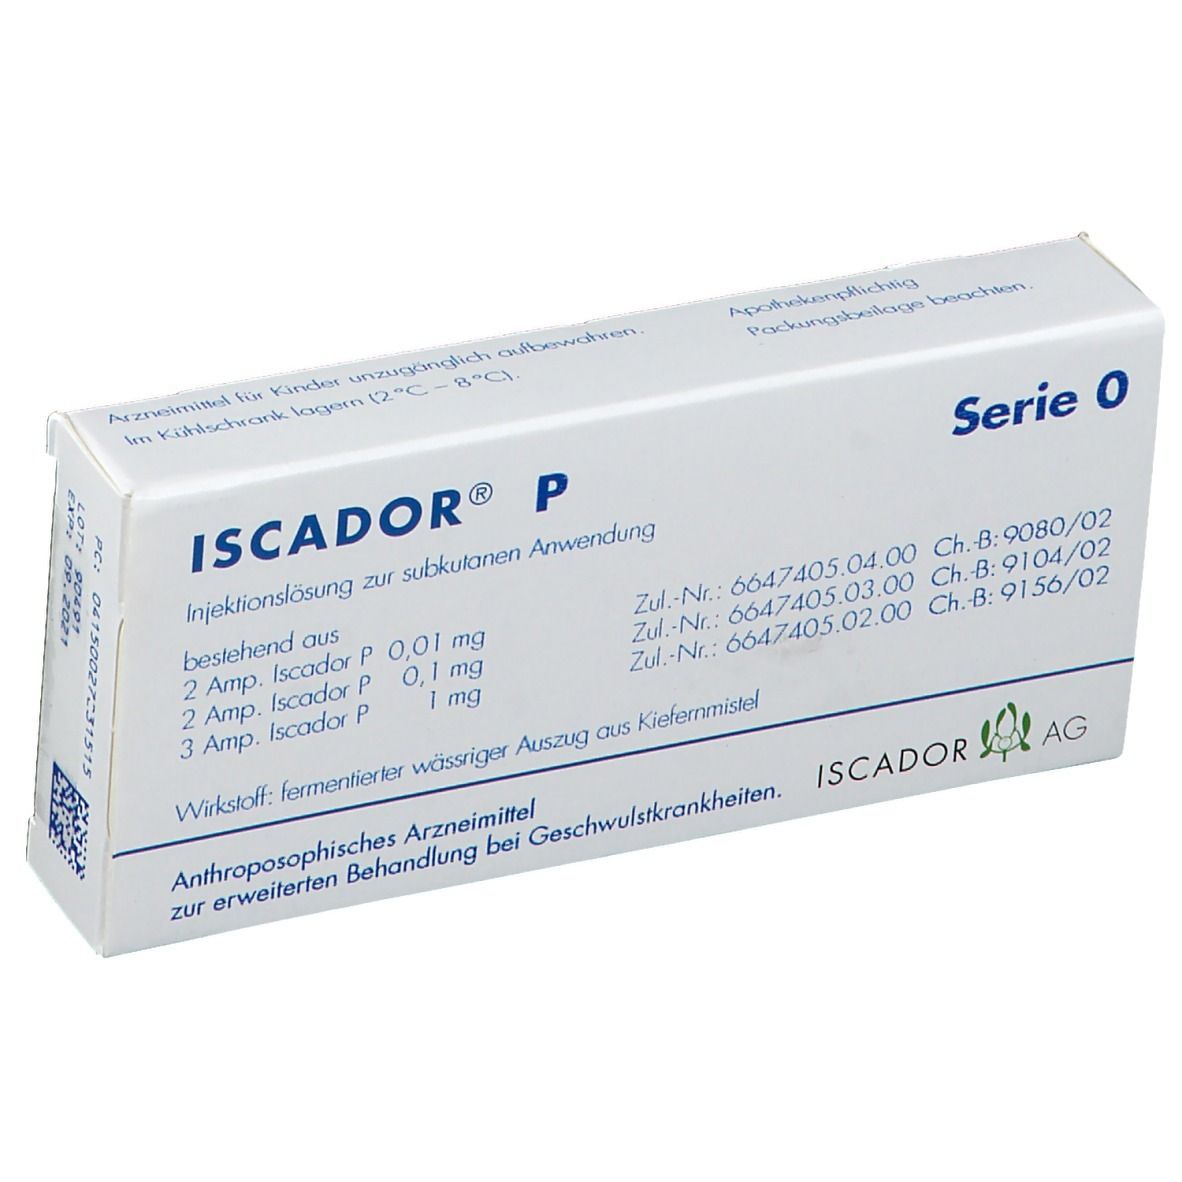 ISCADOR® P Serie 0